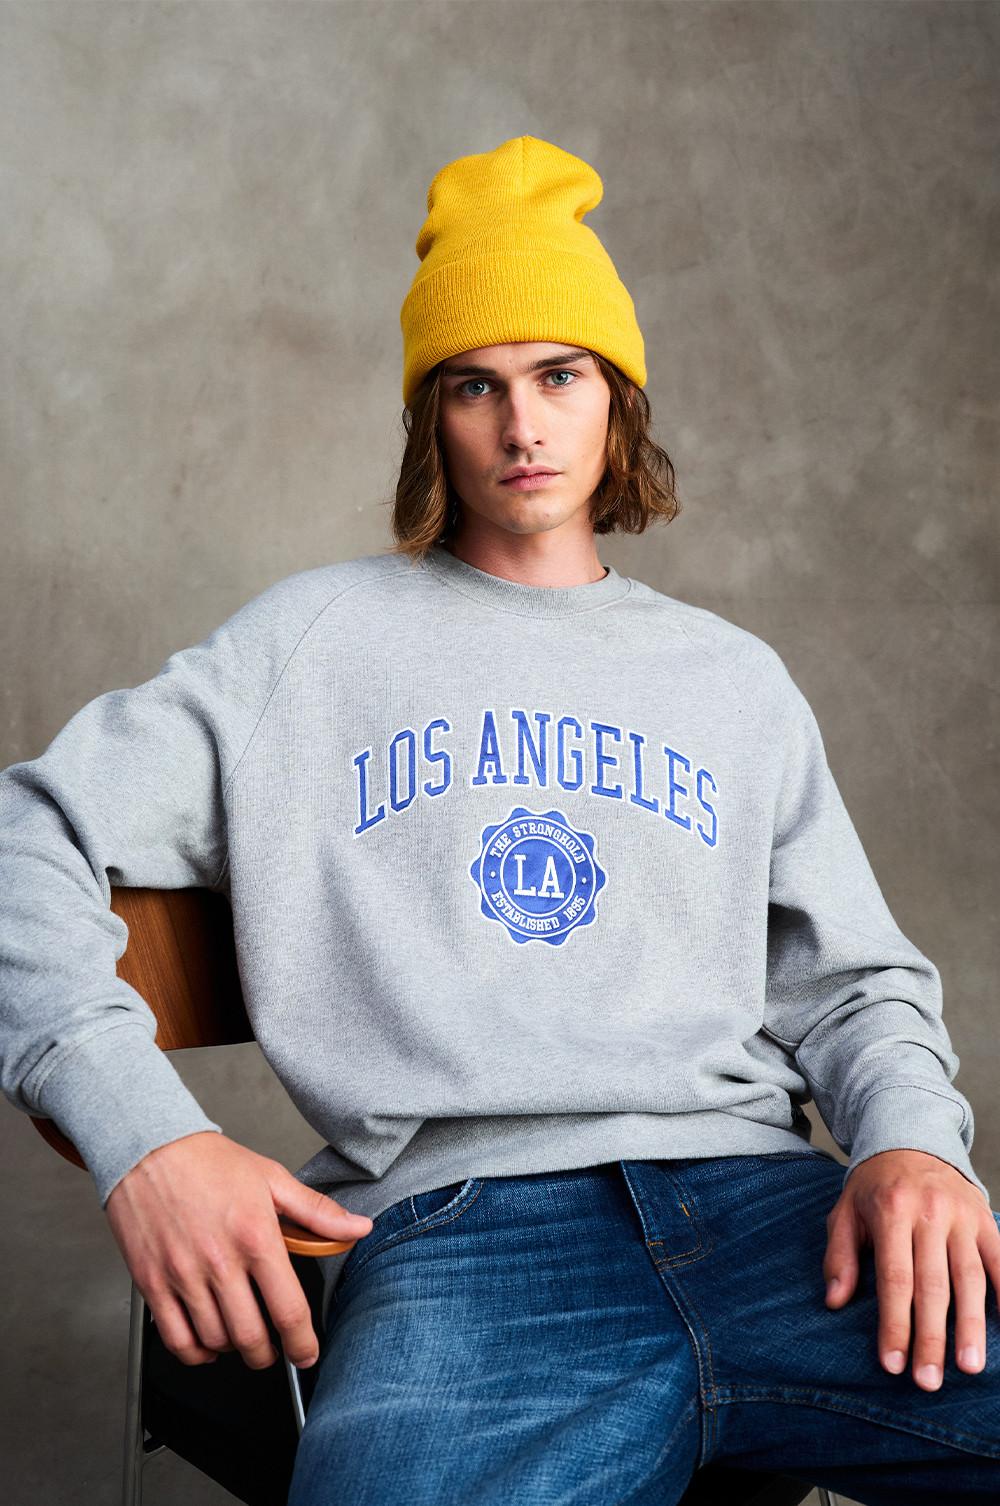 Model met grijs sweatshirt 'Los Angeles', gele beanie en jeans